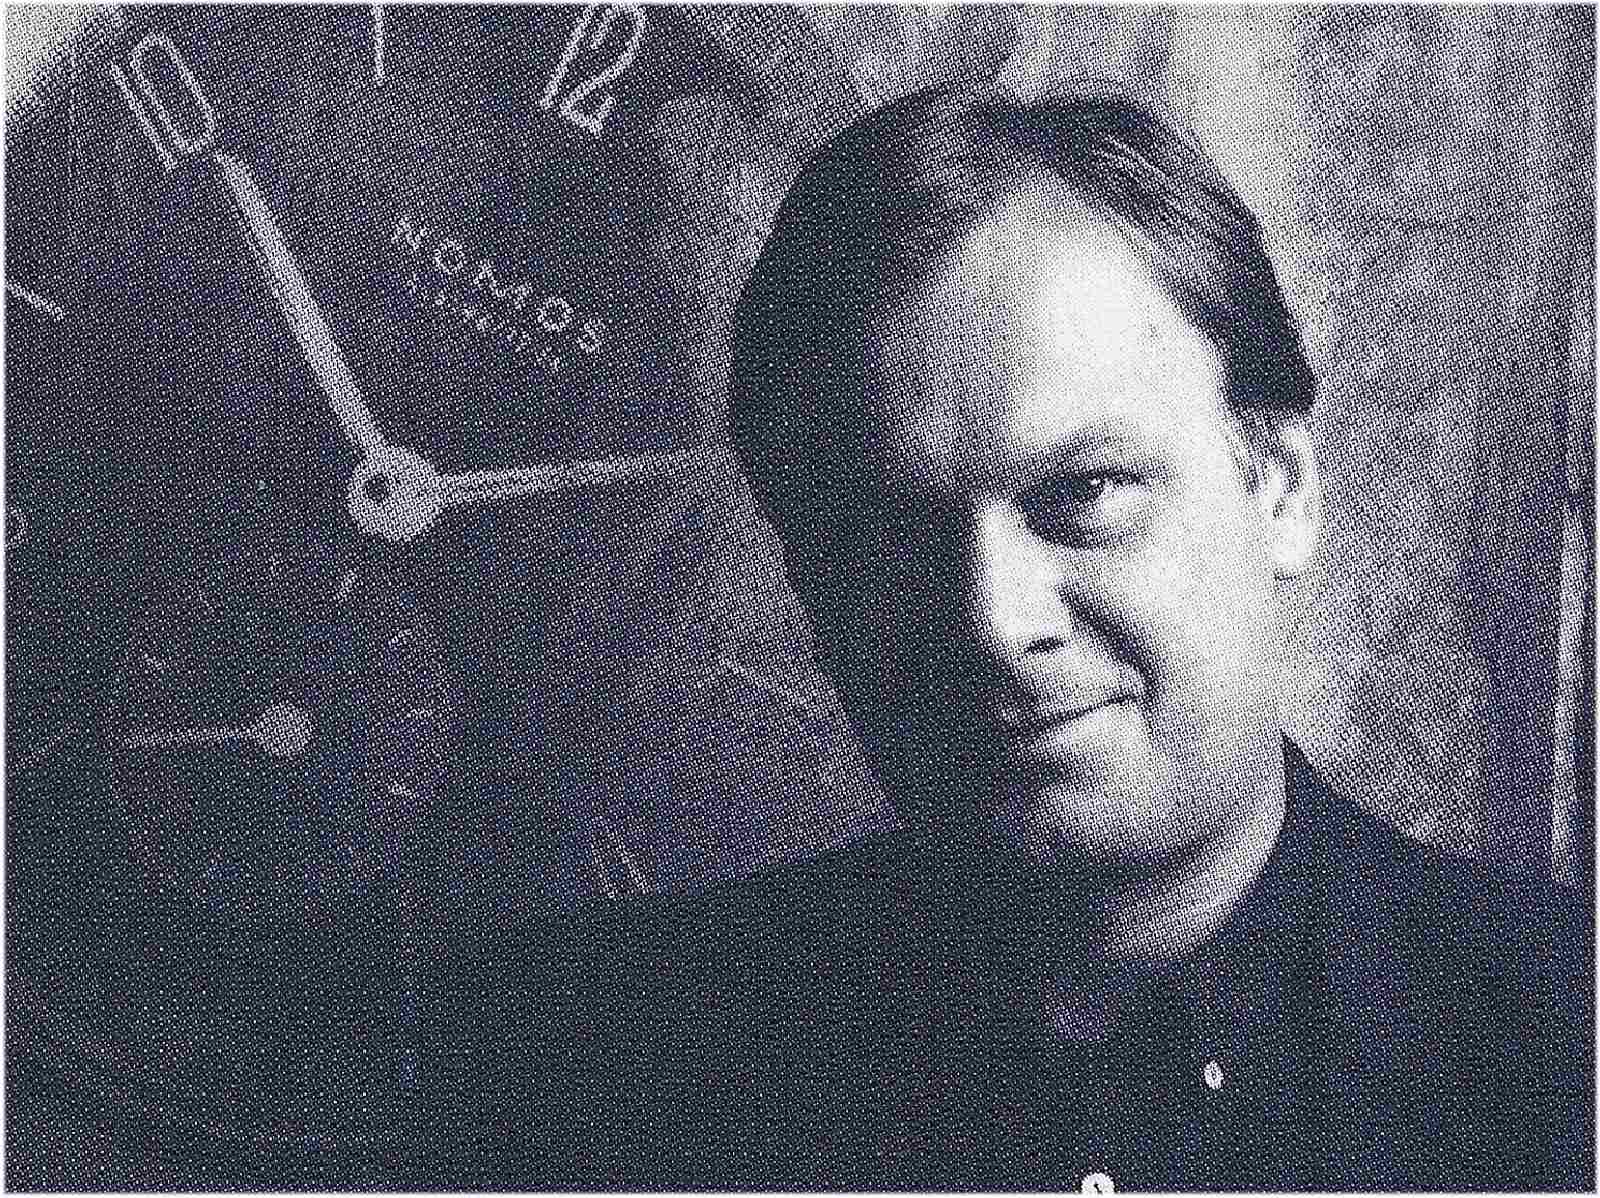 Nomos Gründer Roland Schwerter im Jahr 1992